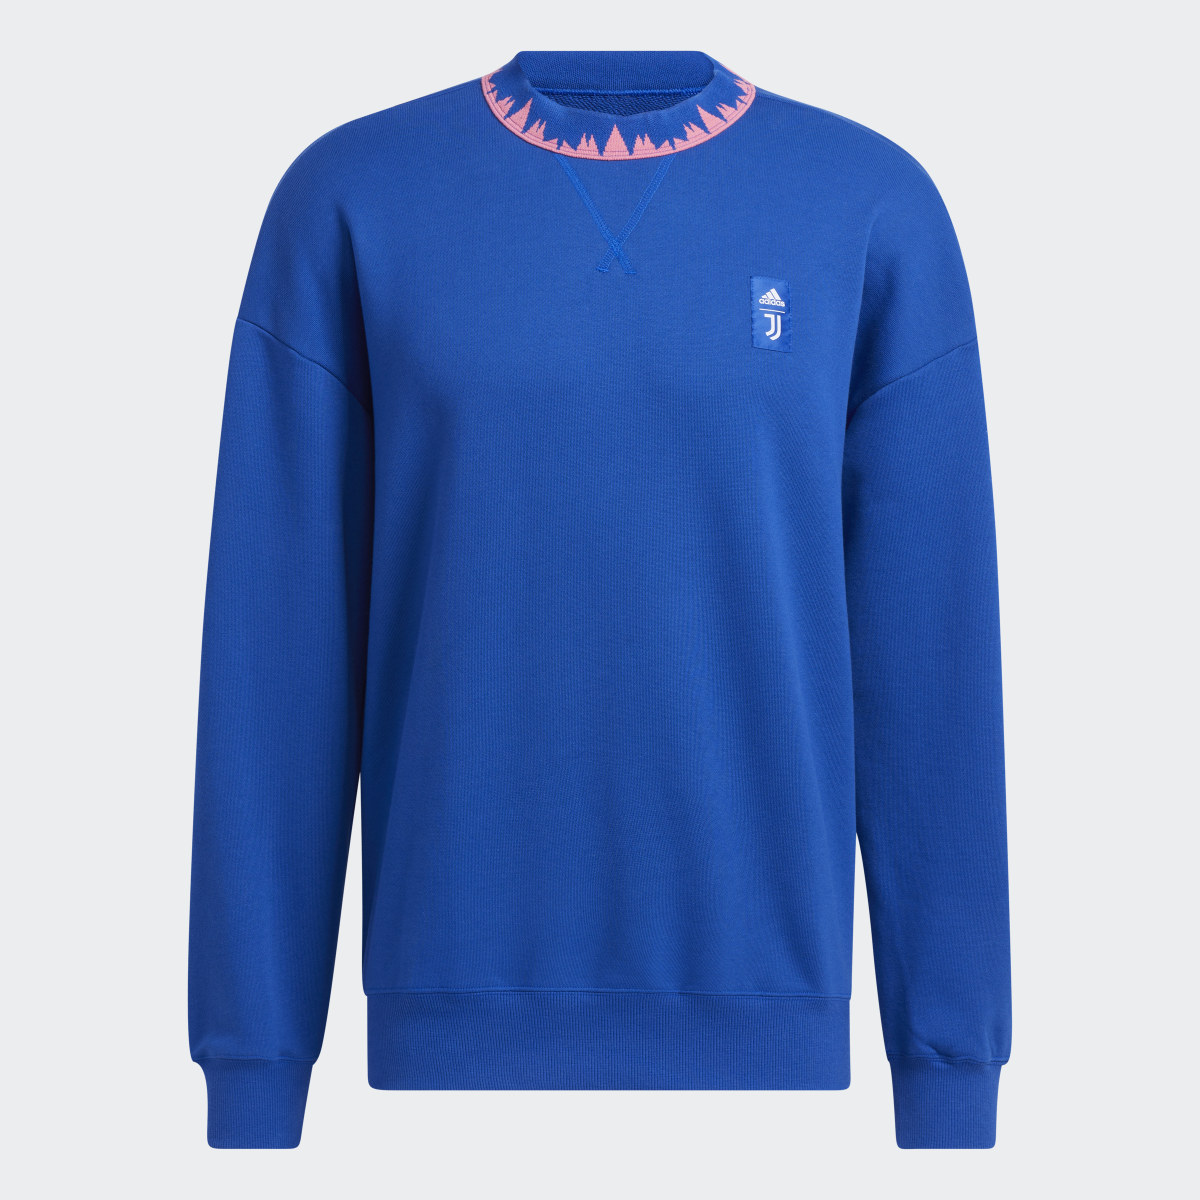 Adidas Juventus Turin Lifestyler Sweatshirt. 5